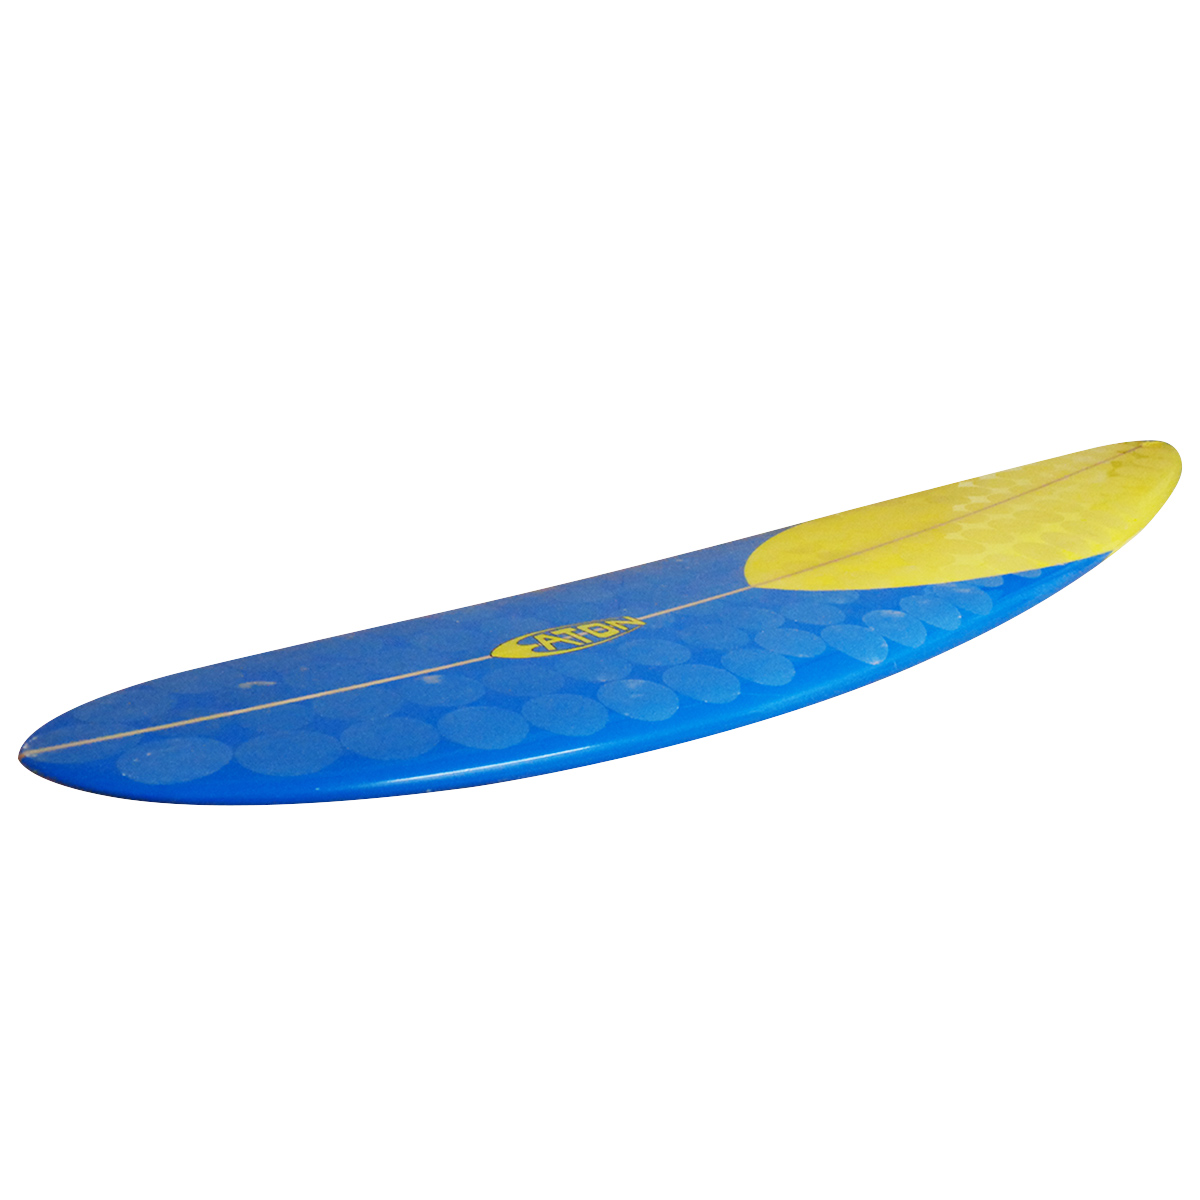 EATON SURFBOARDS / 9'1 Zinger